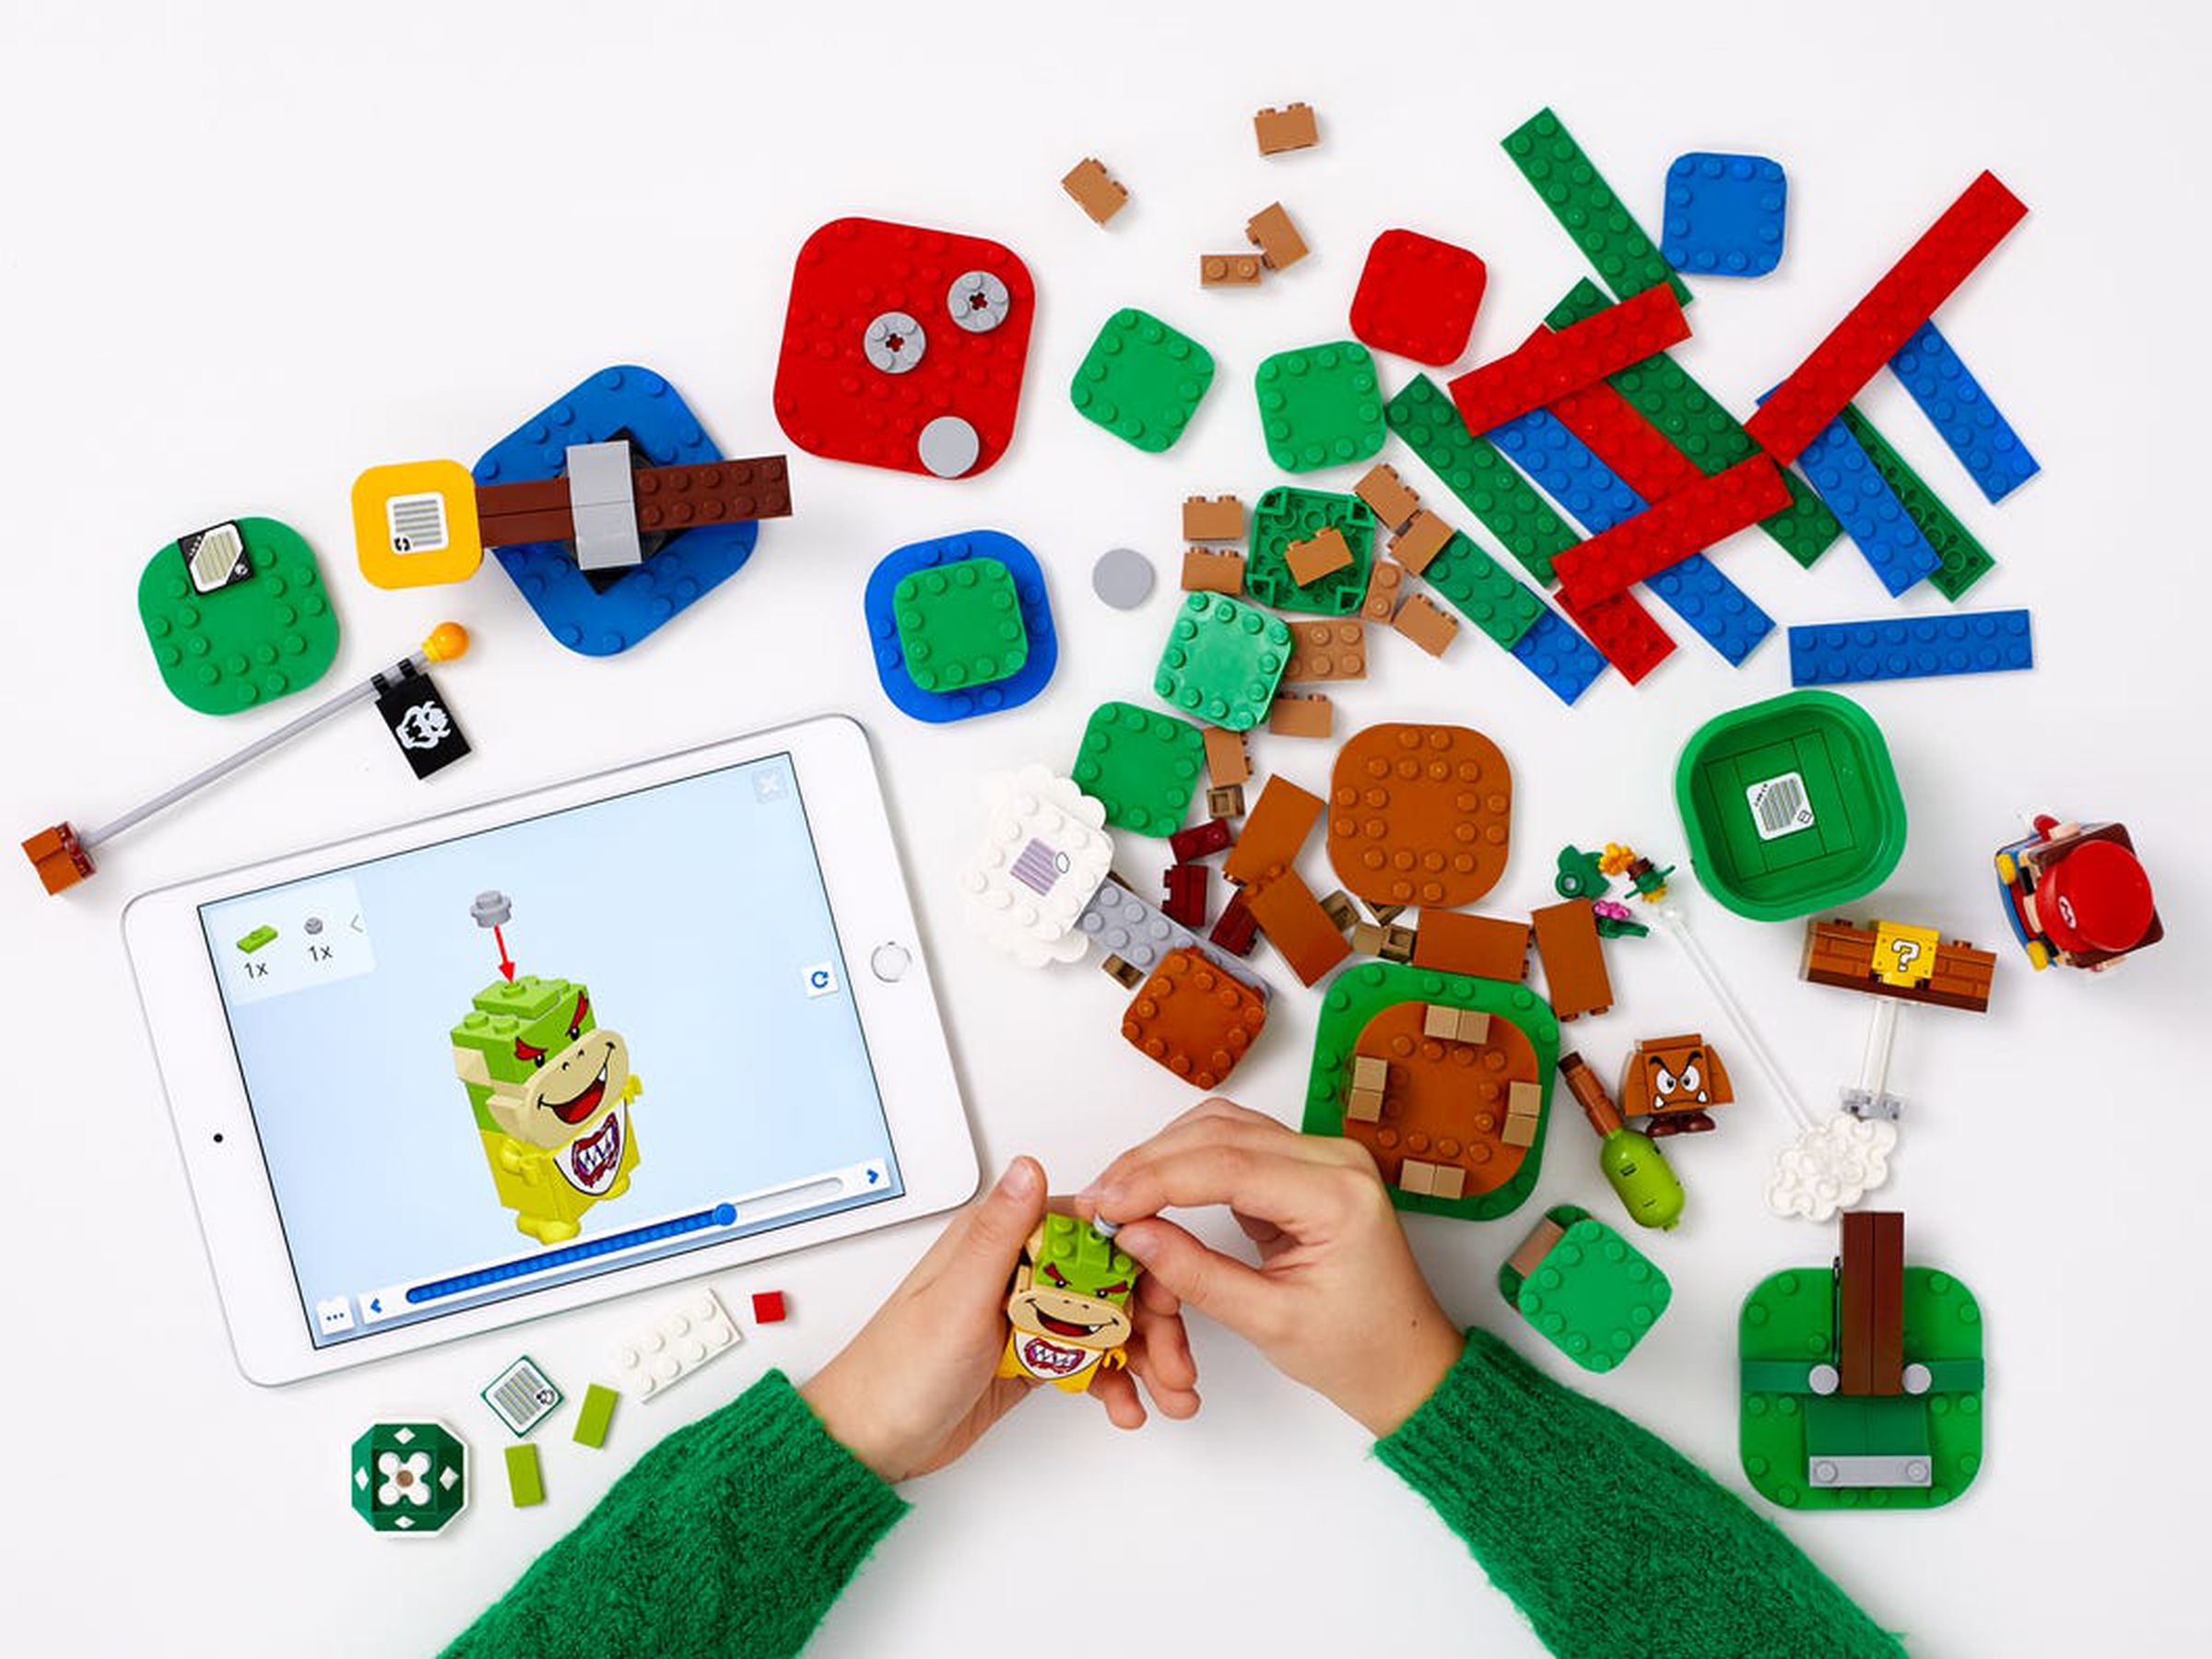 The Lego Super Mario app